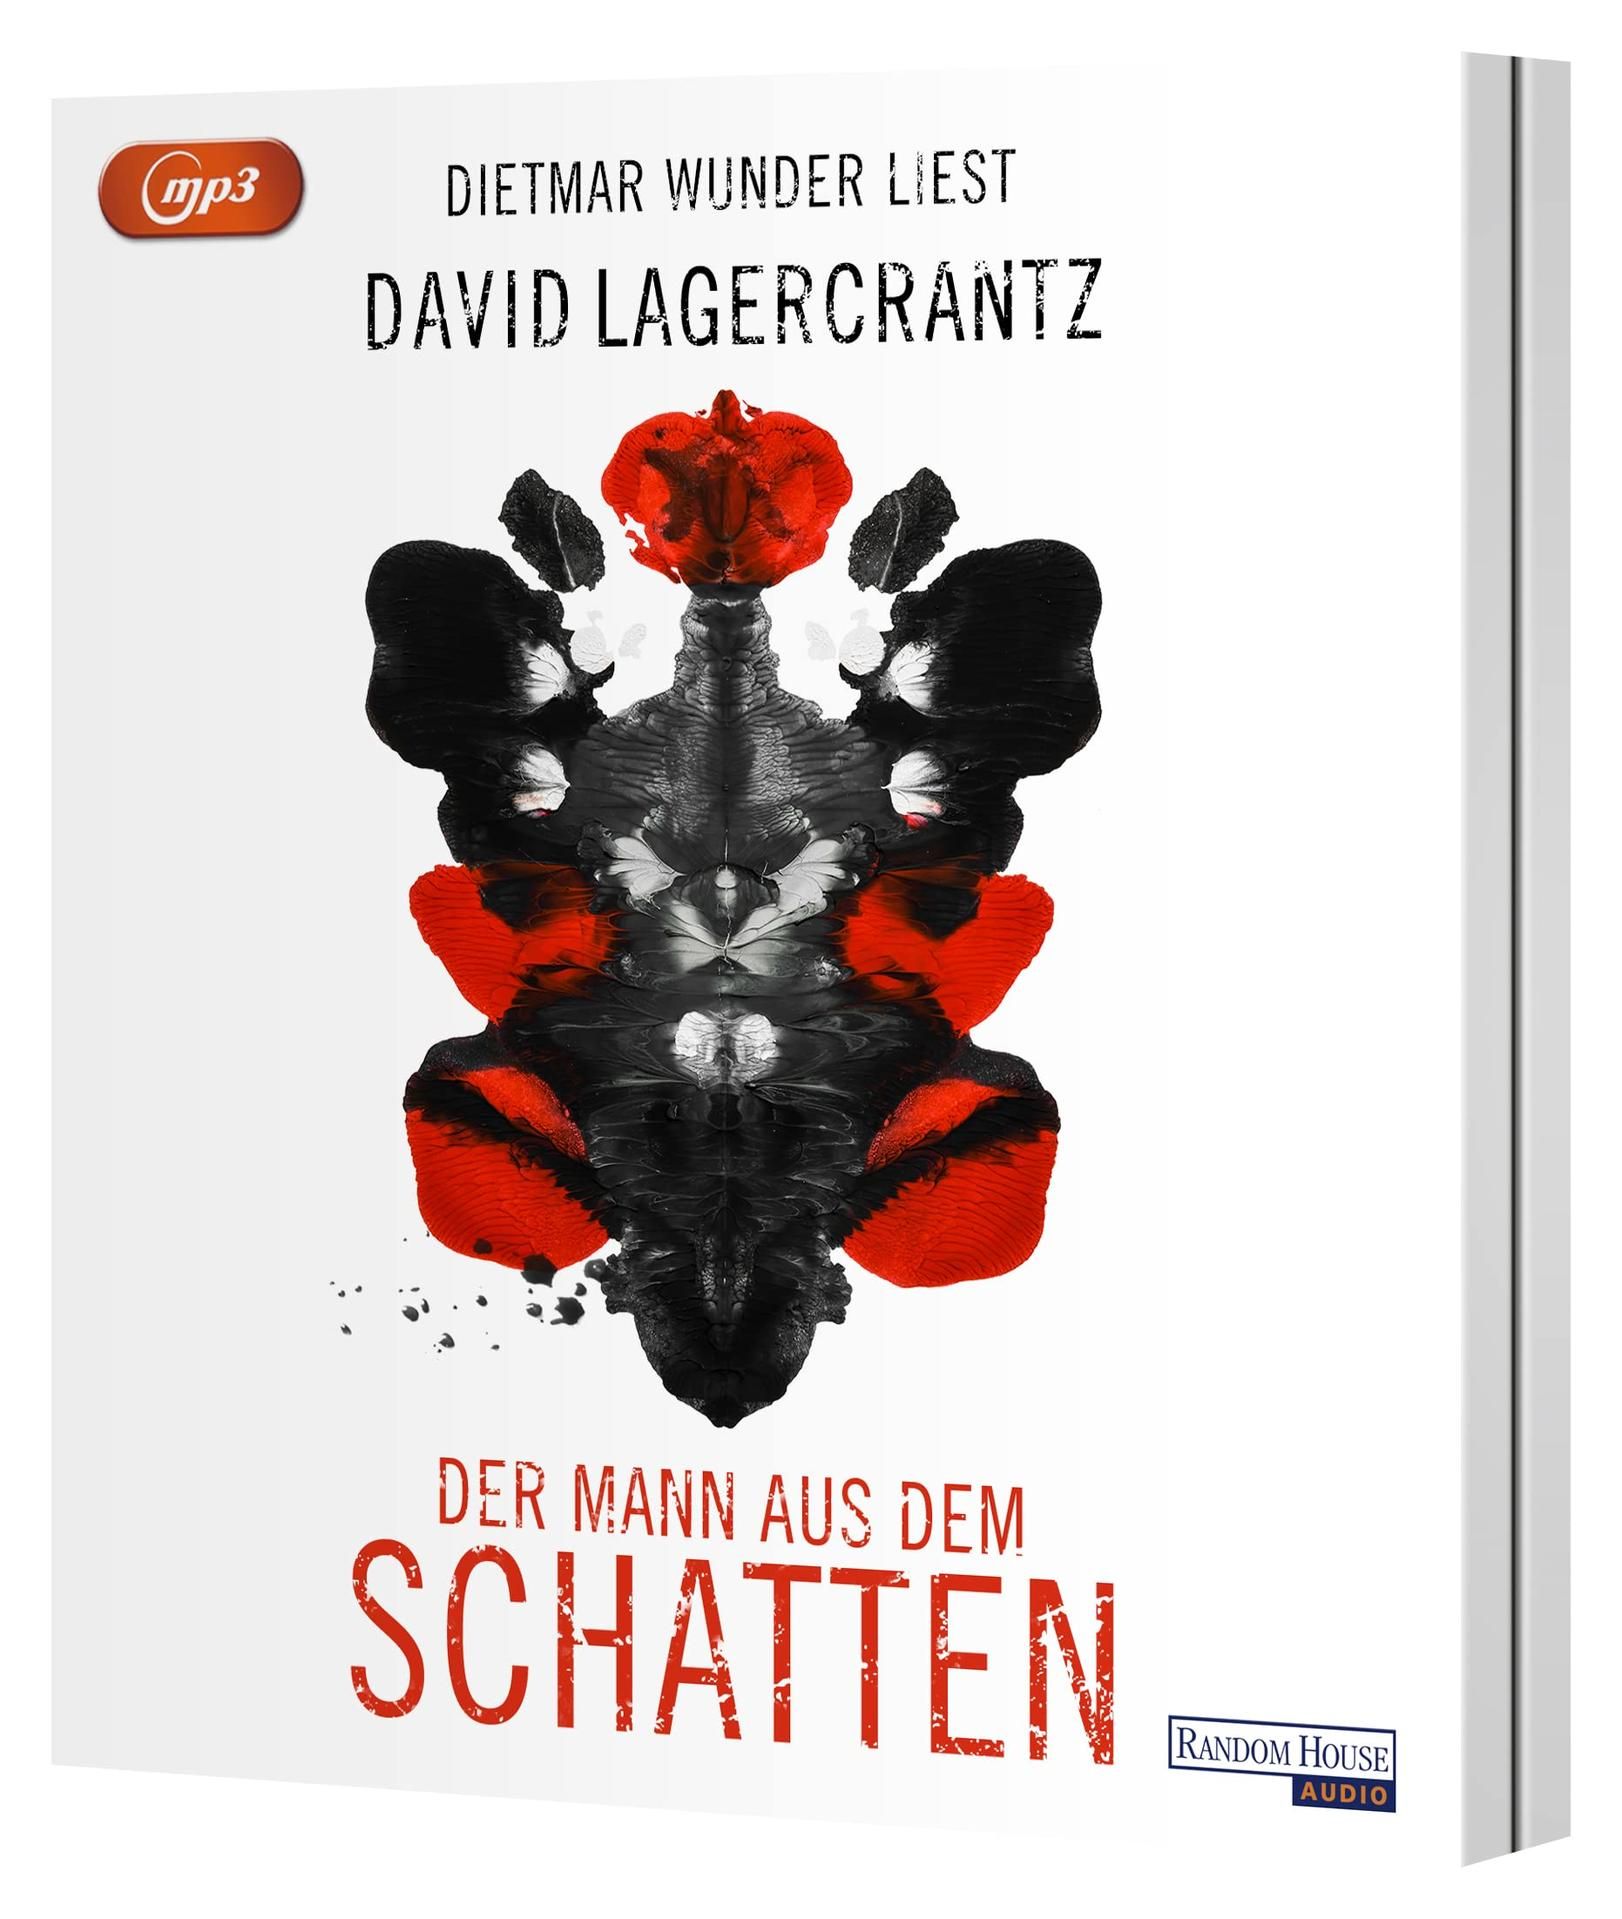 David Der - dem Lagercrantz Schatten (MP3-CD) Mann - aus